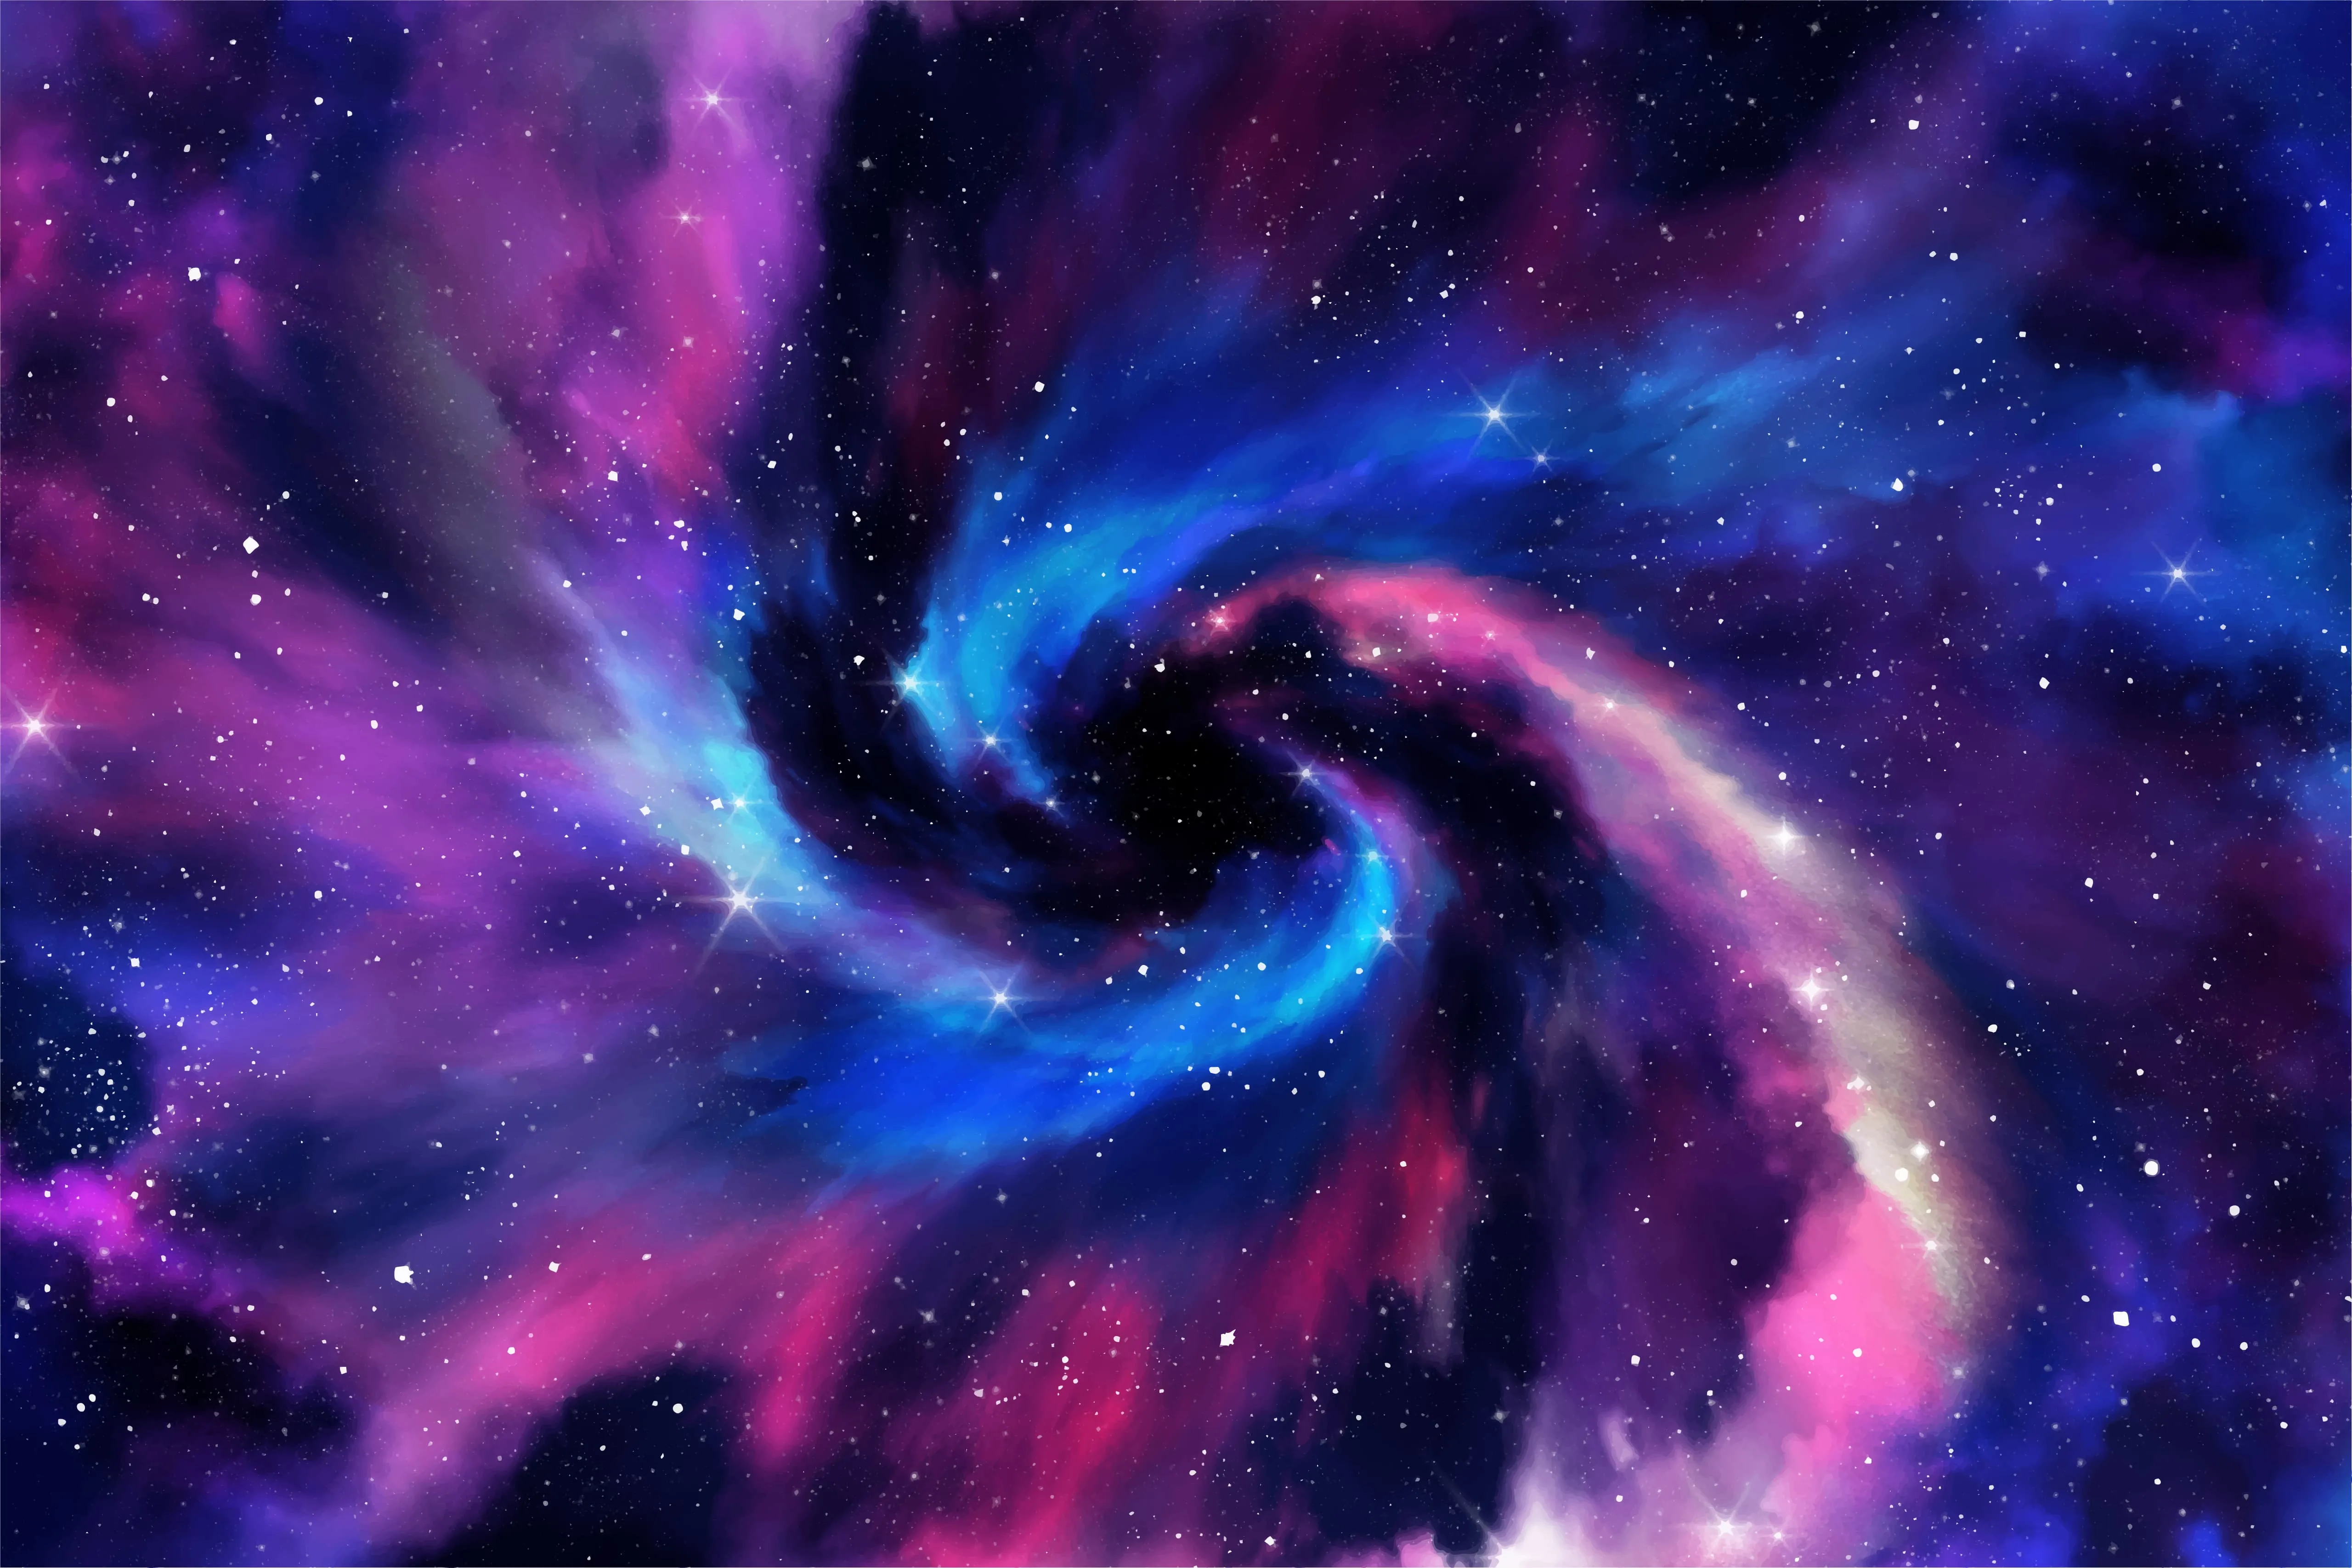 ROG Nebula HDR -teksti ja -logo avaruusteemaista sinisen ja violetin sävyistä taustaa vasten.